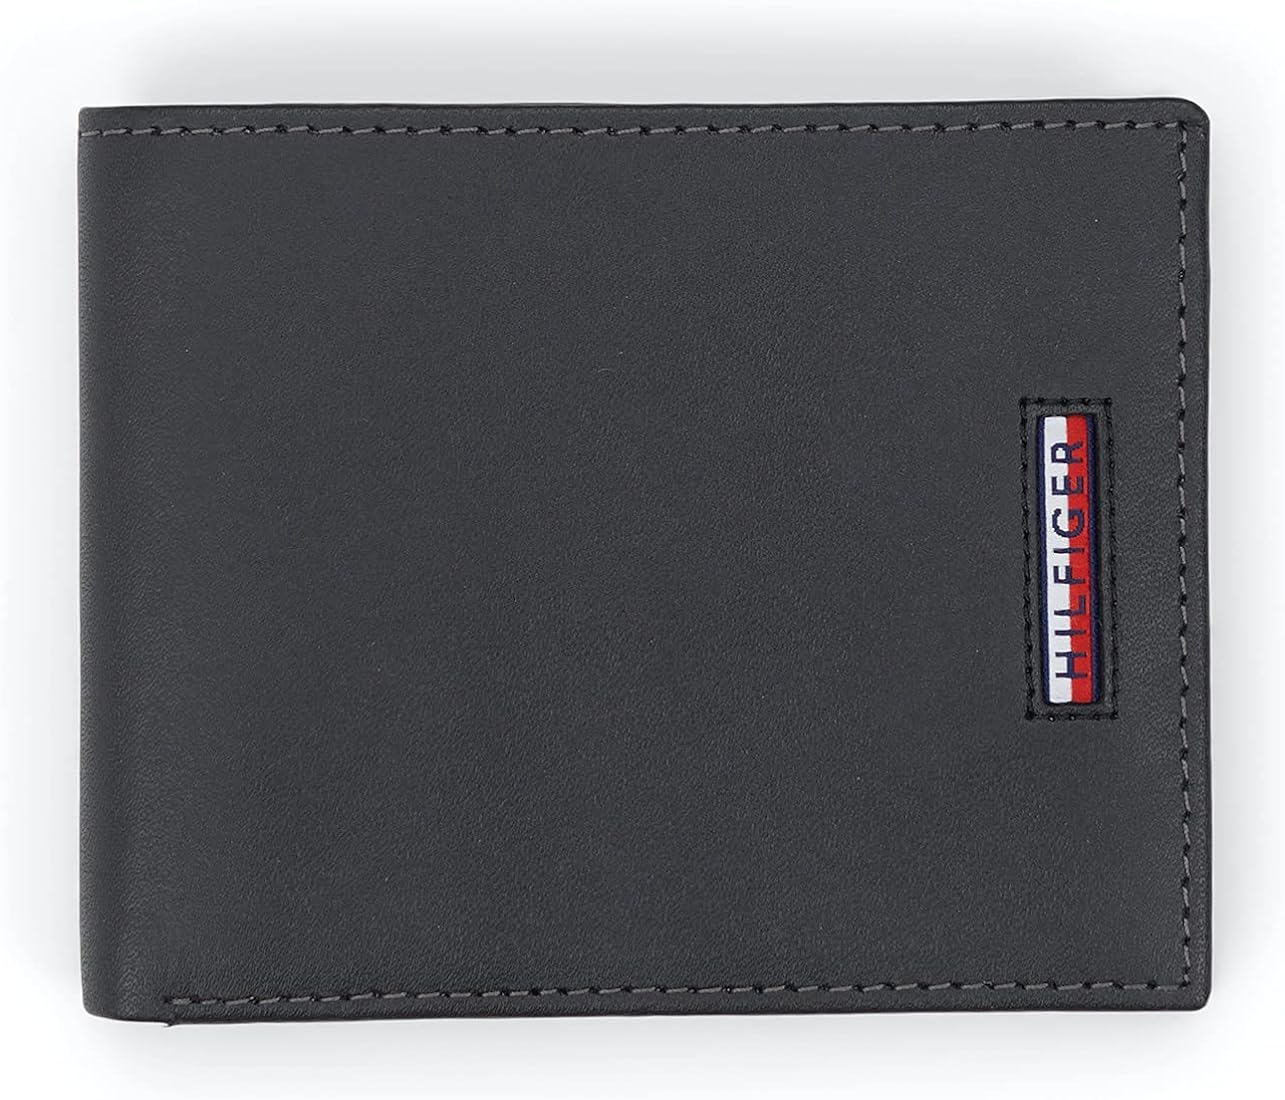 Buy Tommy Hilfiger Riley Leather Global Coin Wallet for Men - Black, 4 Card Slots at ecobt.ru